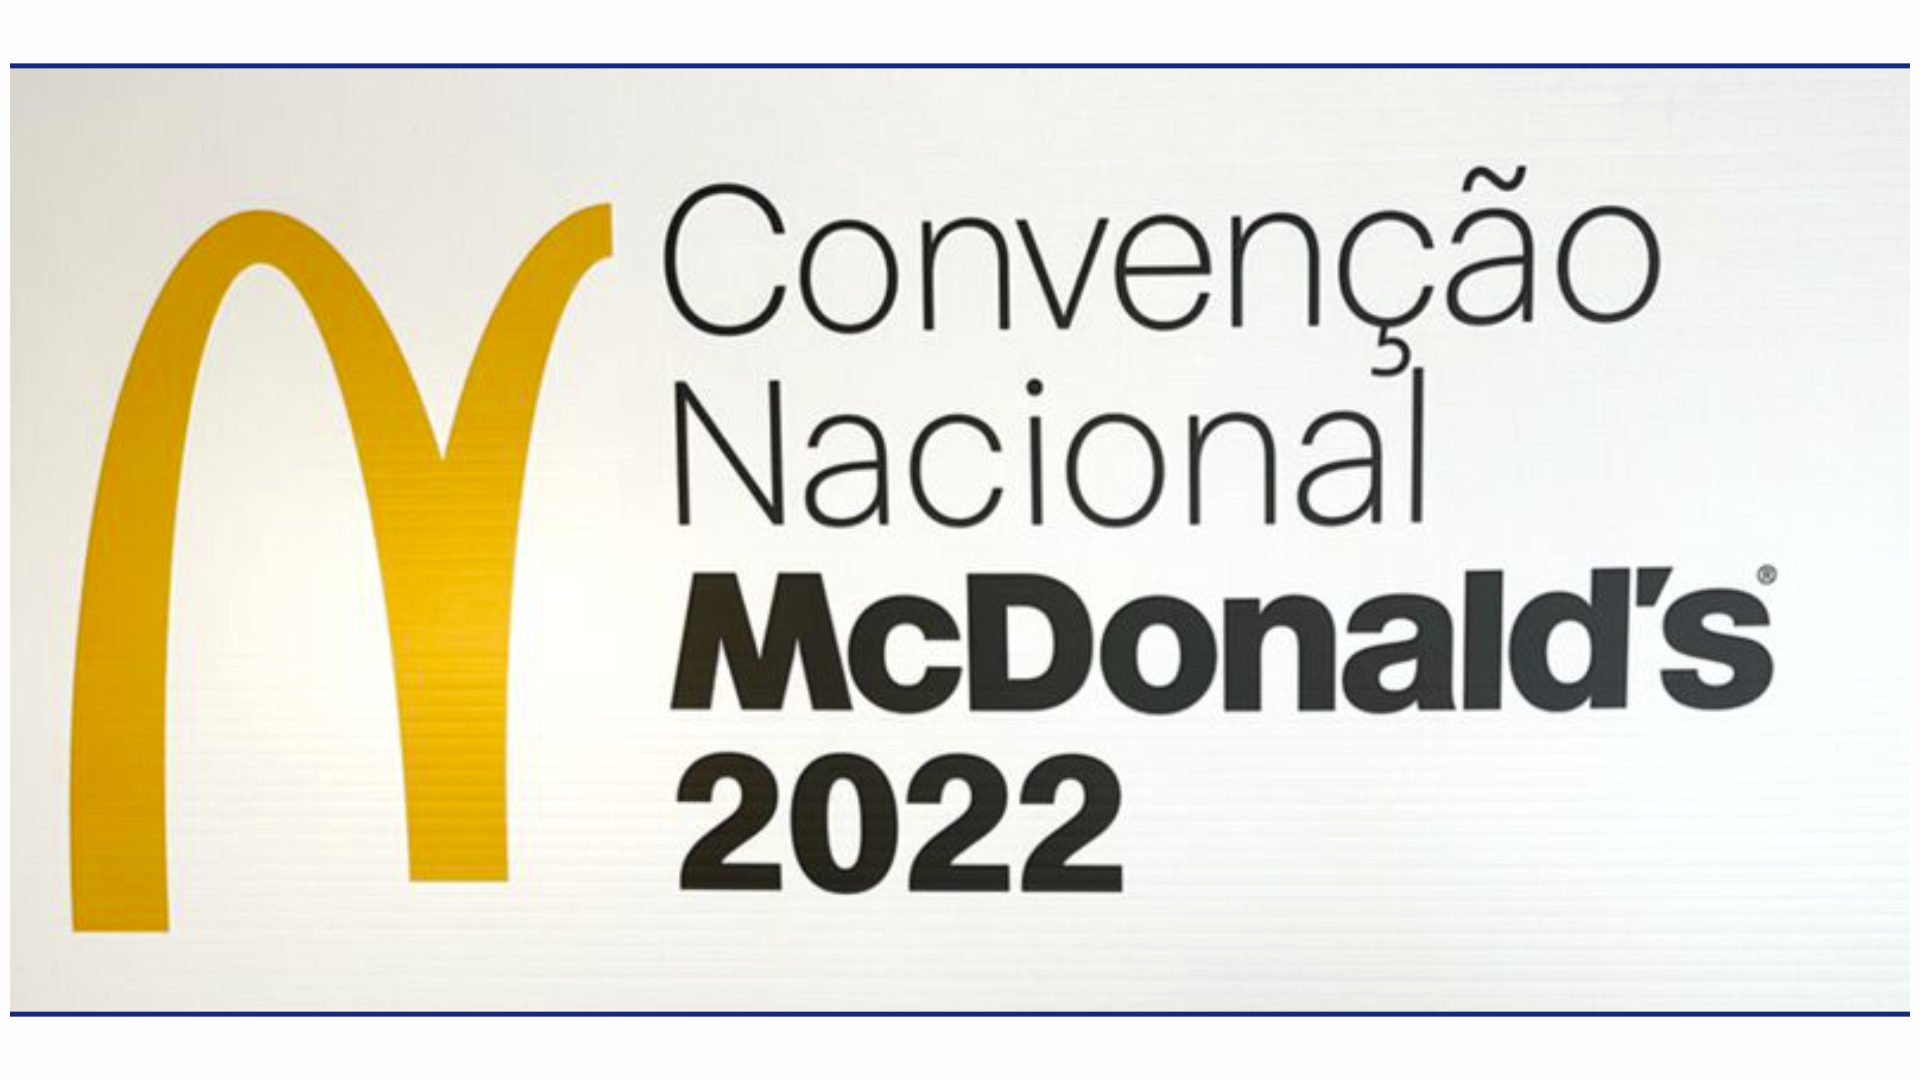 Convenção Nacional McDonald's 2022